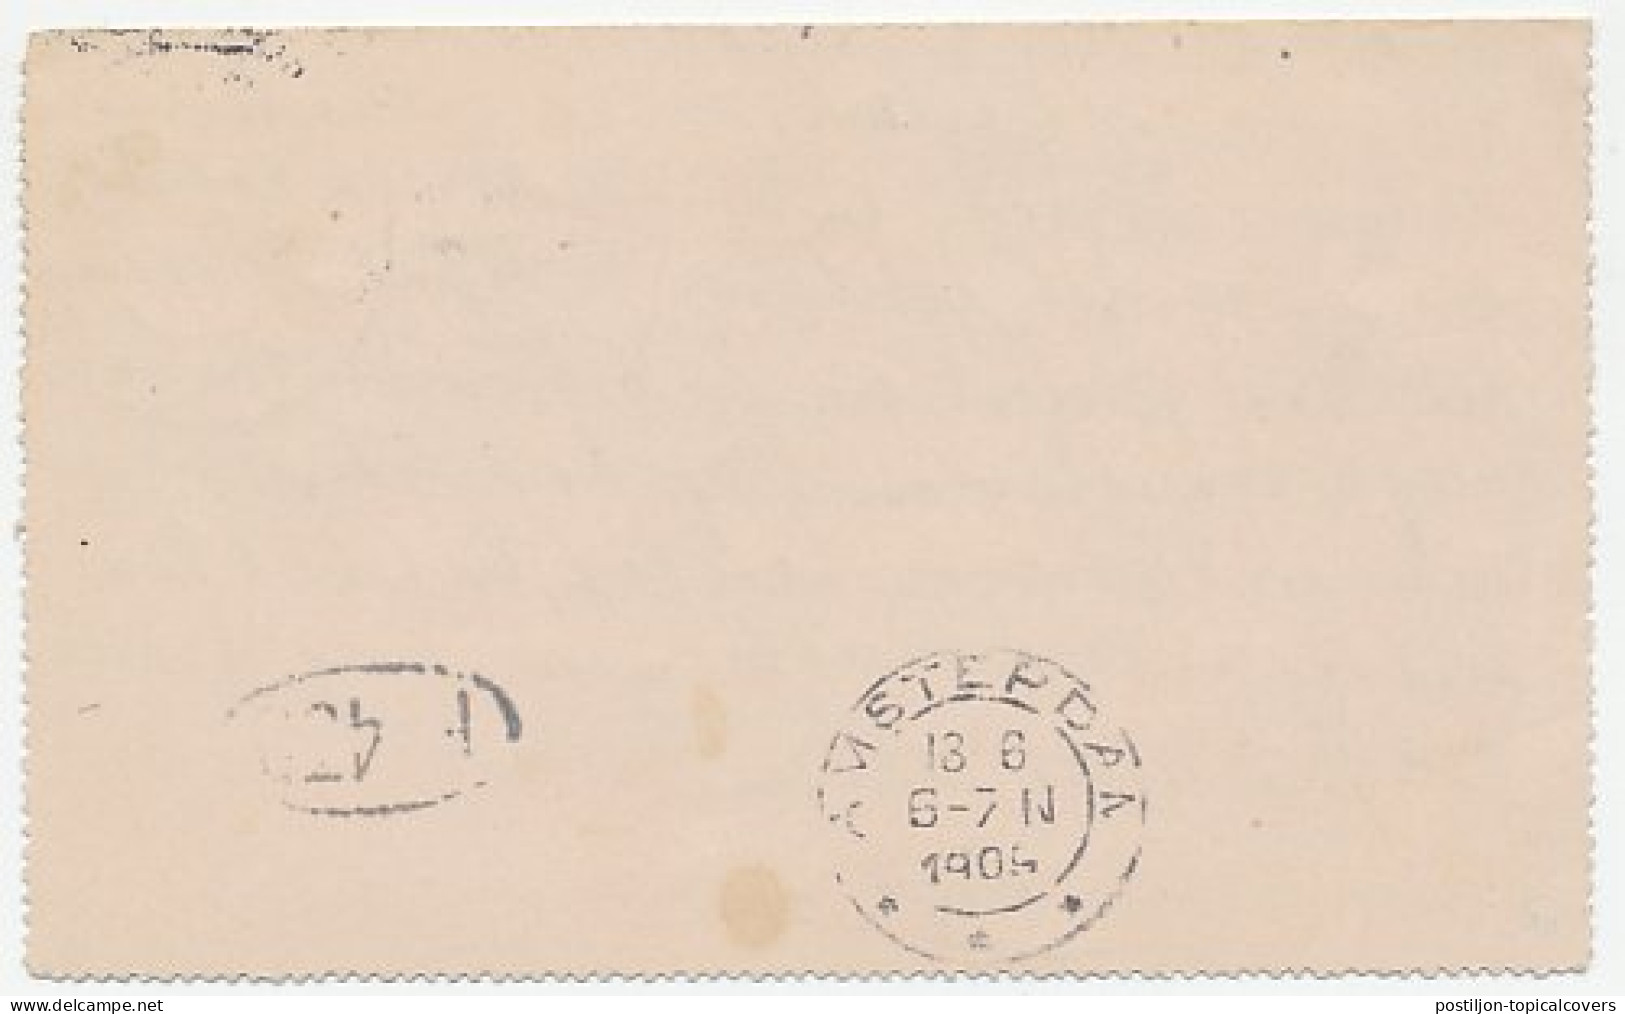 Postblad G. 9 / Bijfrankering Dordrecht - Amsterdam 1909 - Ganzsachen